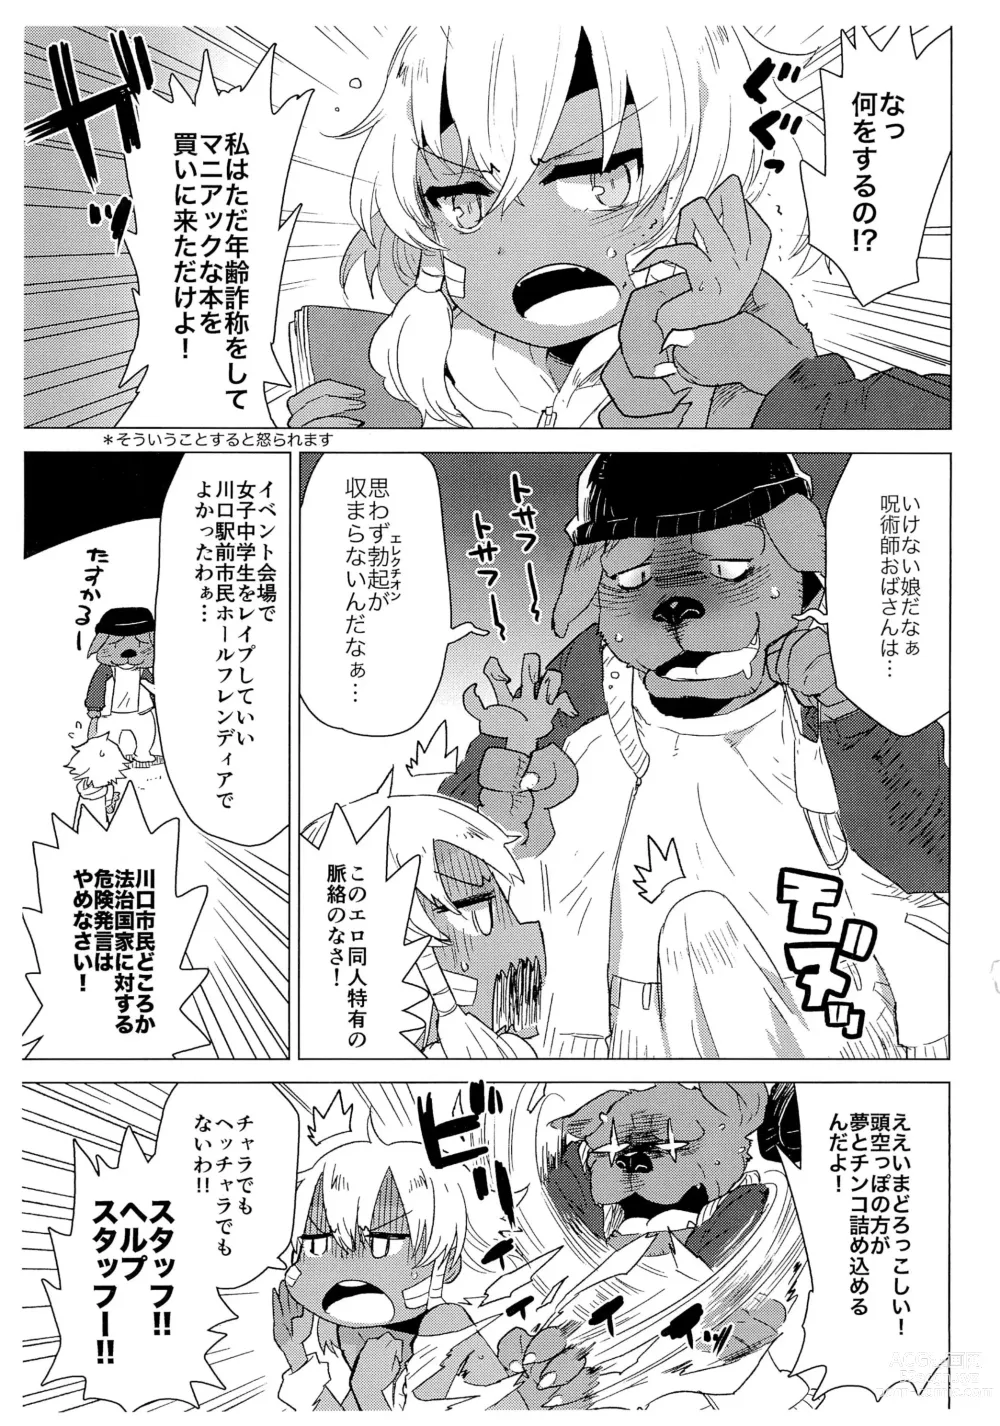 Page 3 of doujinshi Tosa-inu wa Jujutsushi Oba-san no koto ga Suki sugite Kawaguchi Eki Shimin Hall Friendia de Rape shichau Hon